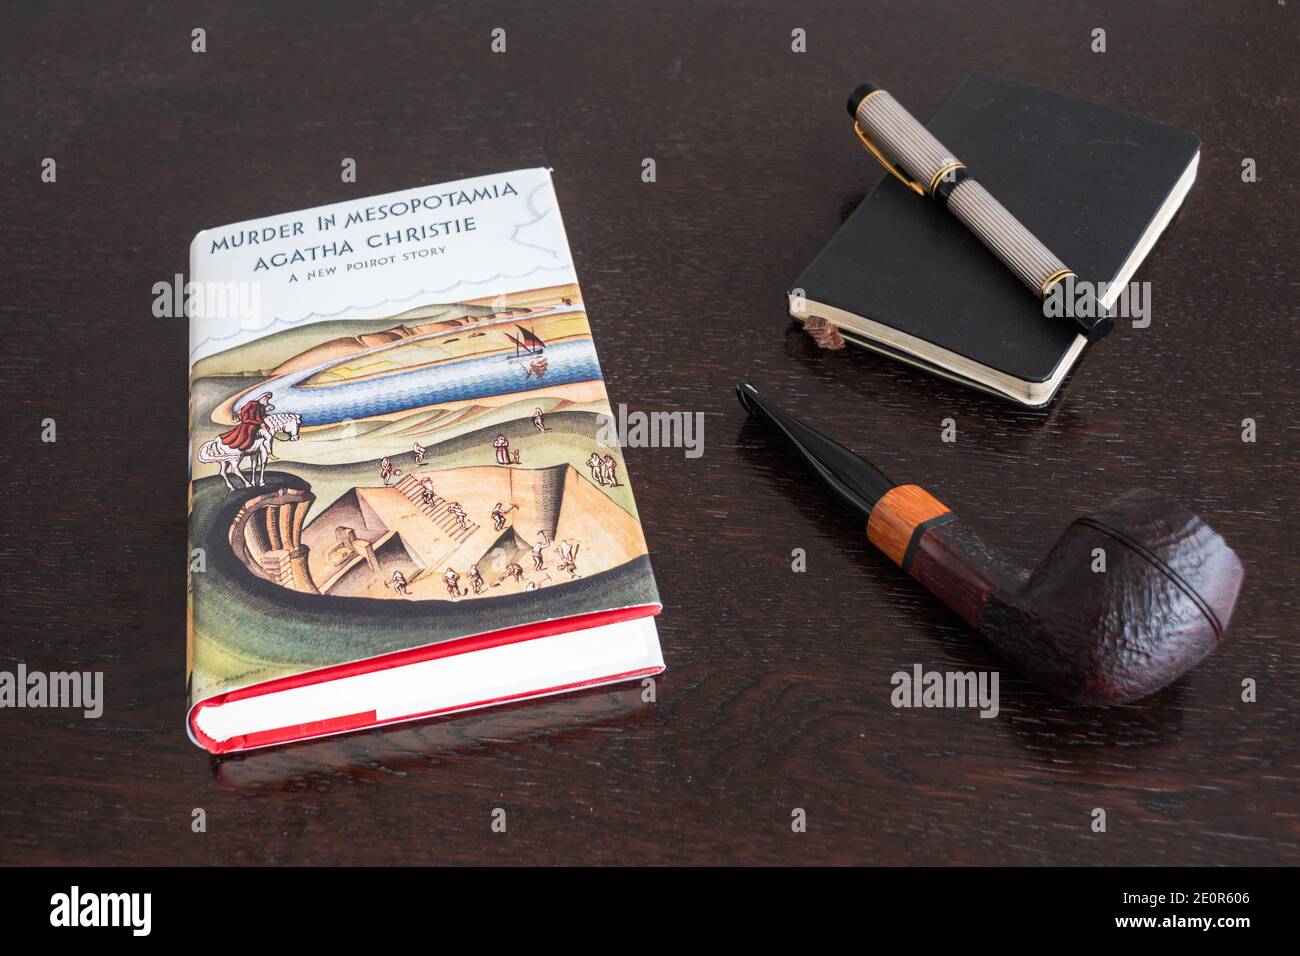 Londra, Inghilterra, Regno Unito - 2 gennaio 2021: Omicidio in Mesopotamia Libro di Agatha Christie in un Facsimile prima edizione con tabacchina, penna Fountian e N Foto Stock